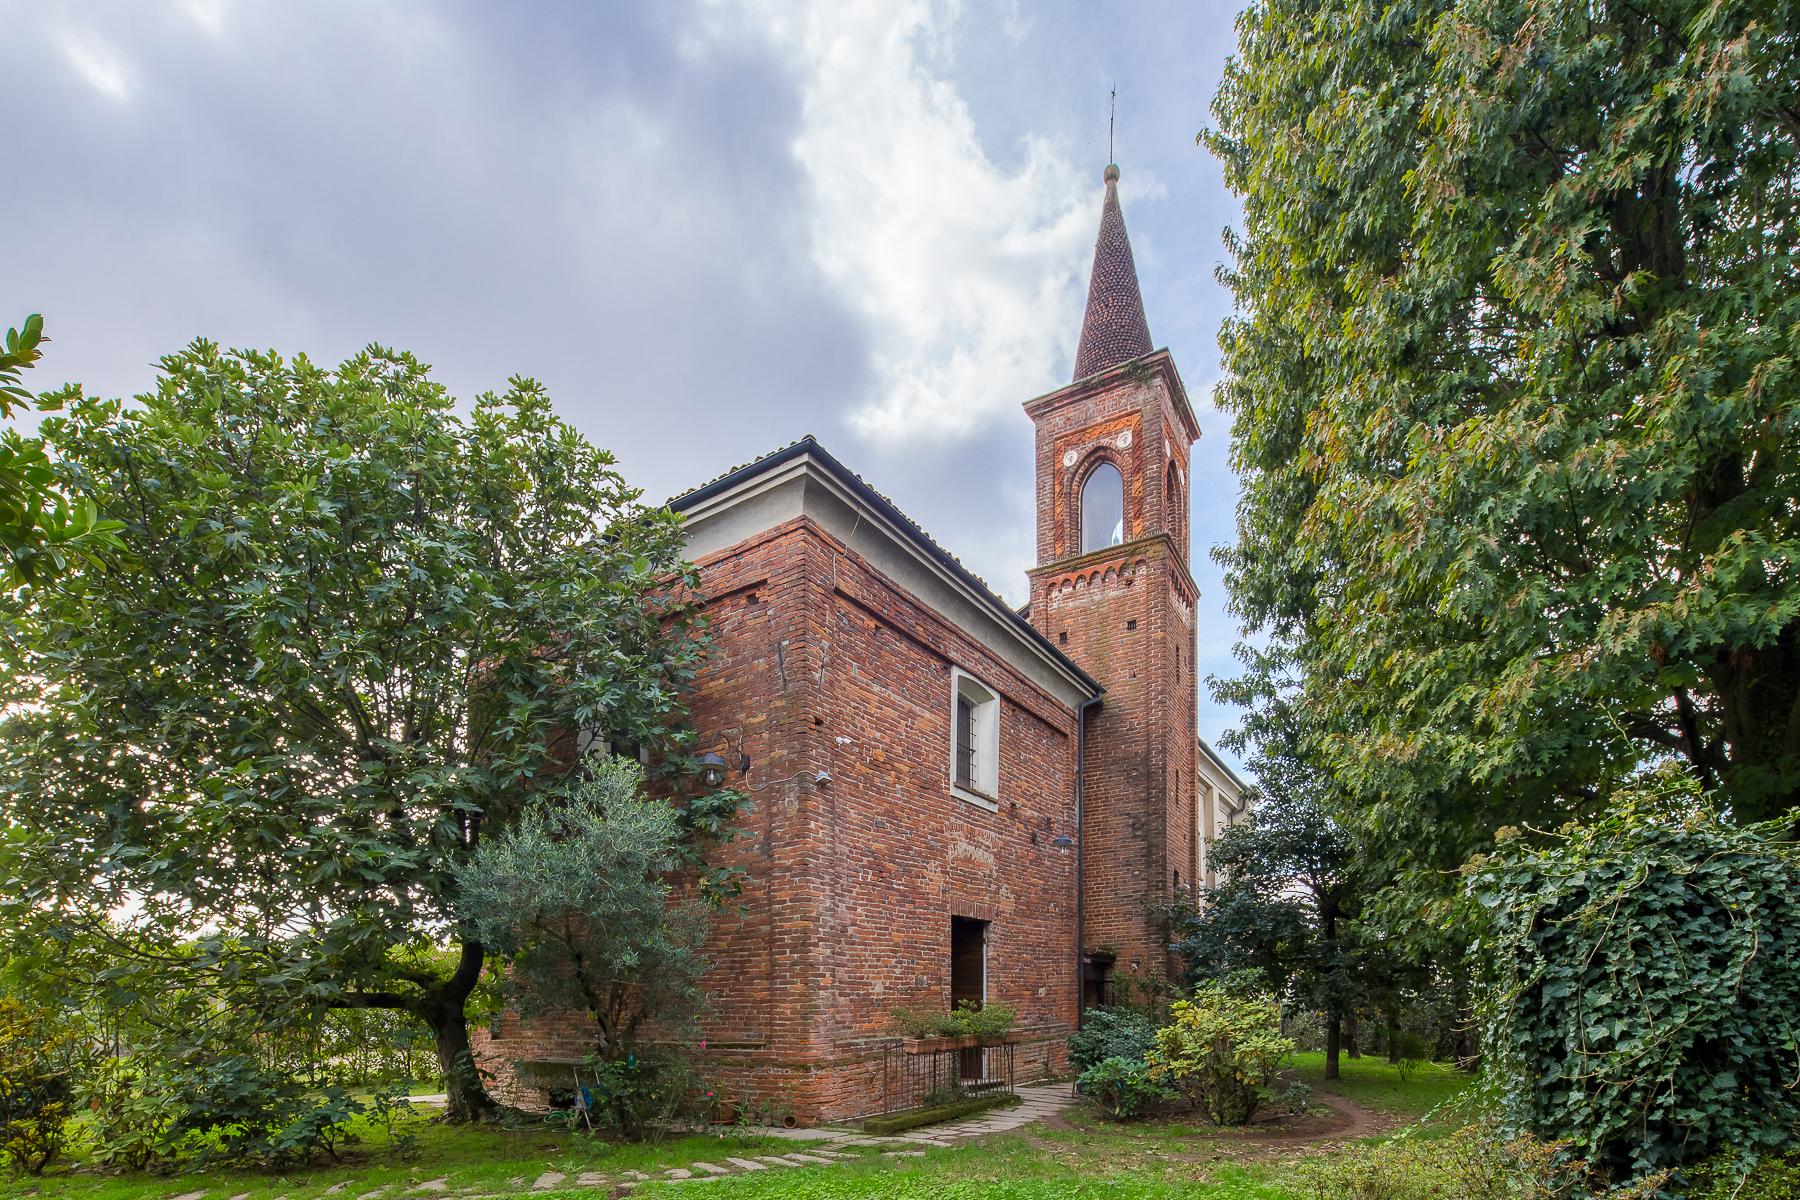 Eglise désacralisée, utilisée comme habitation, avec jardin - 1